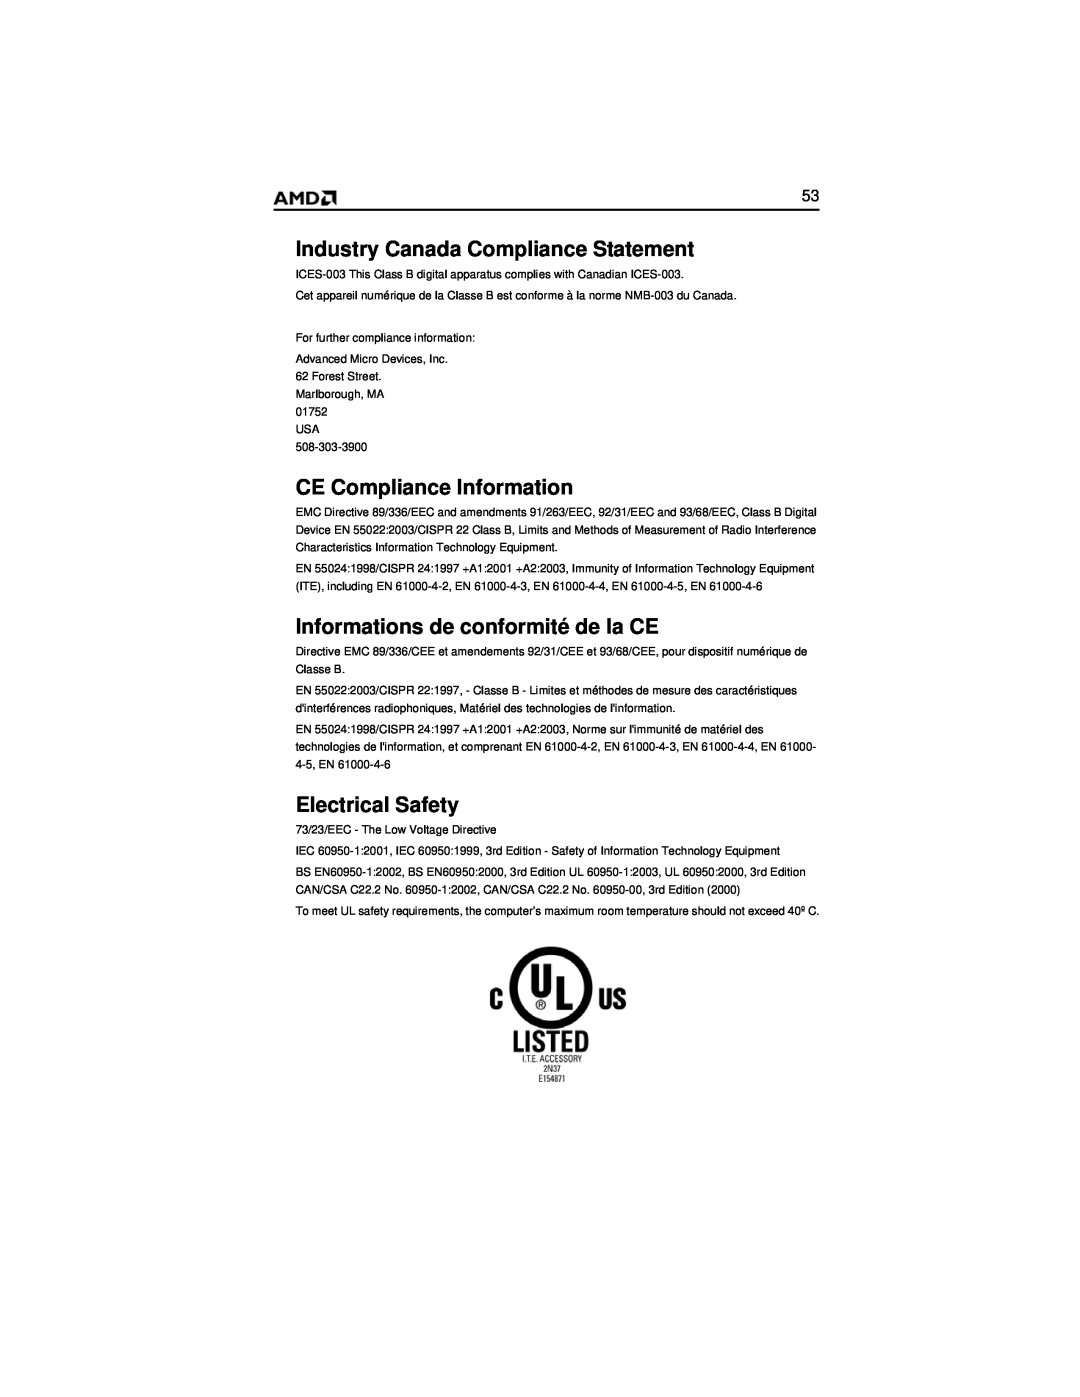 AMD HD 2400 manual Industry Canada Compliance Statement, CE Compliance Information, Informations de conformité de la CE 